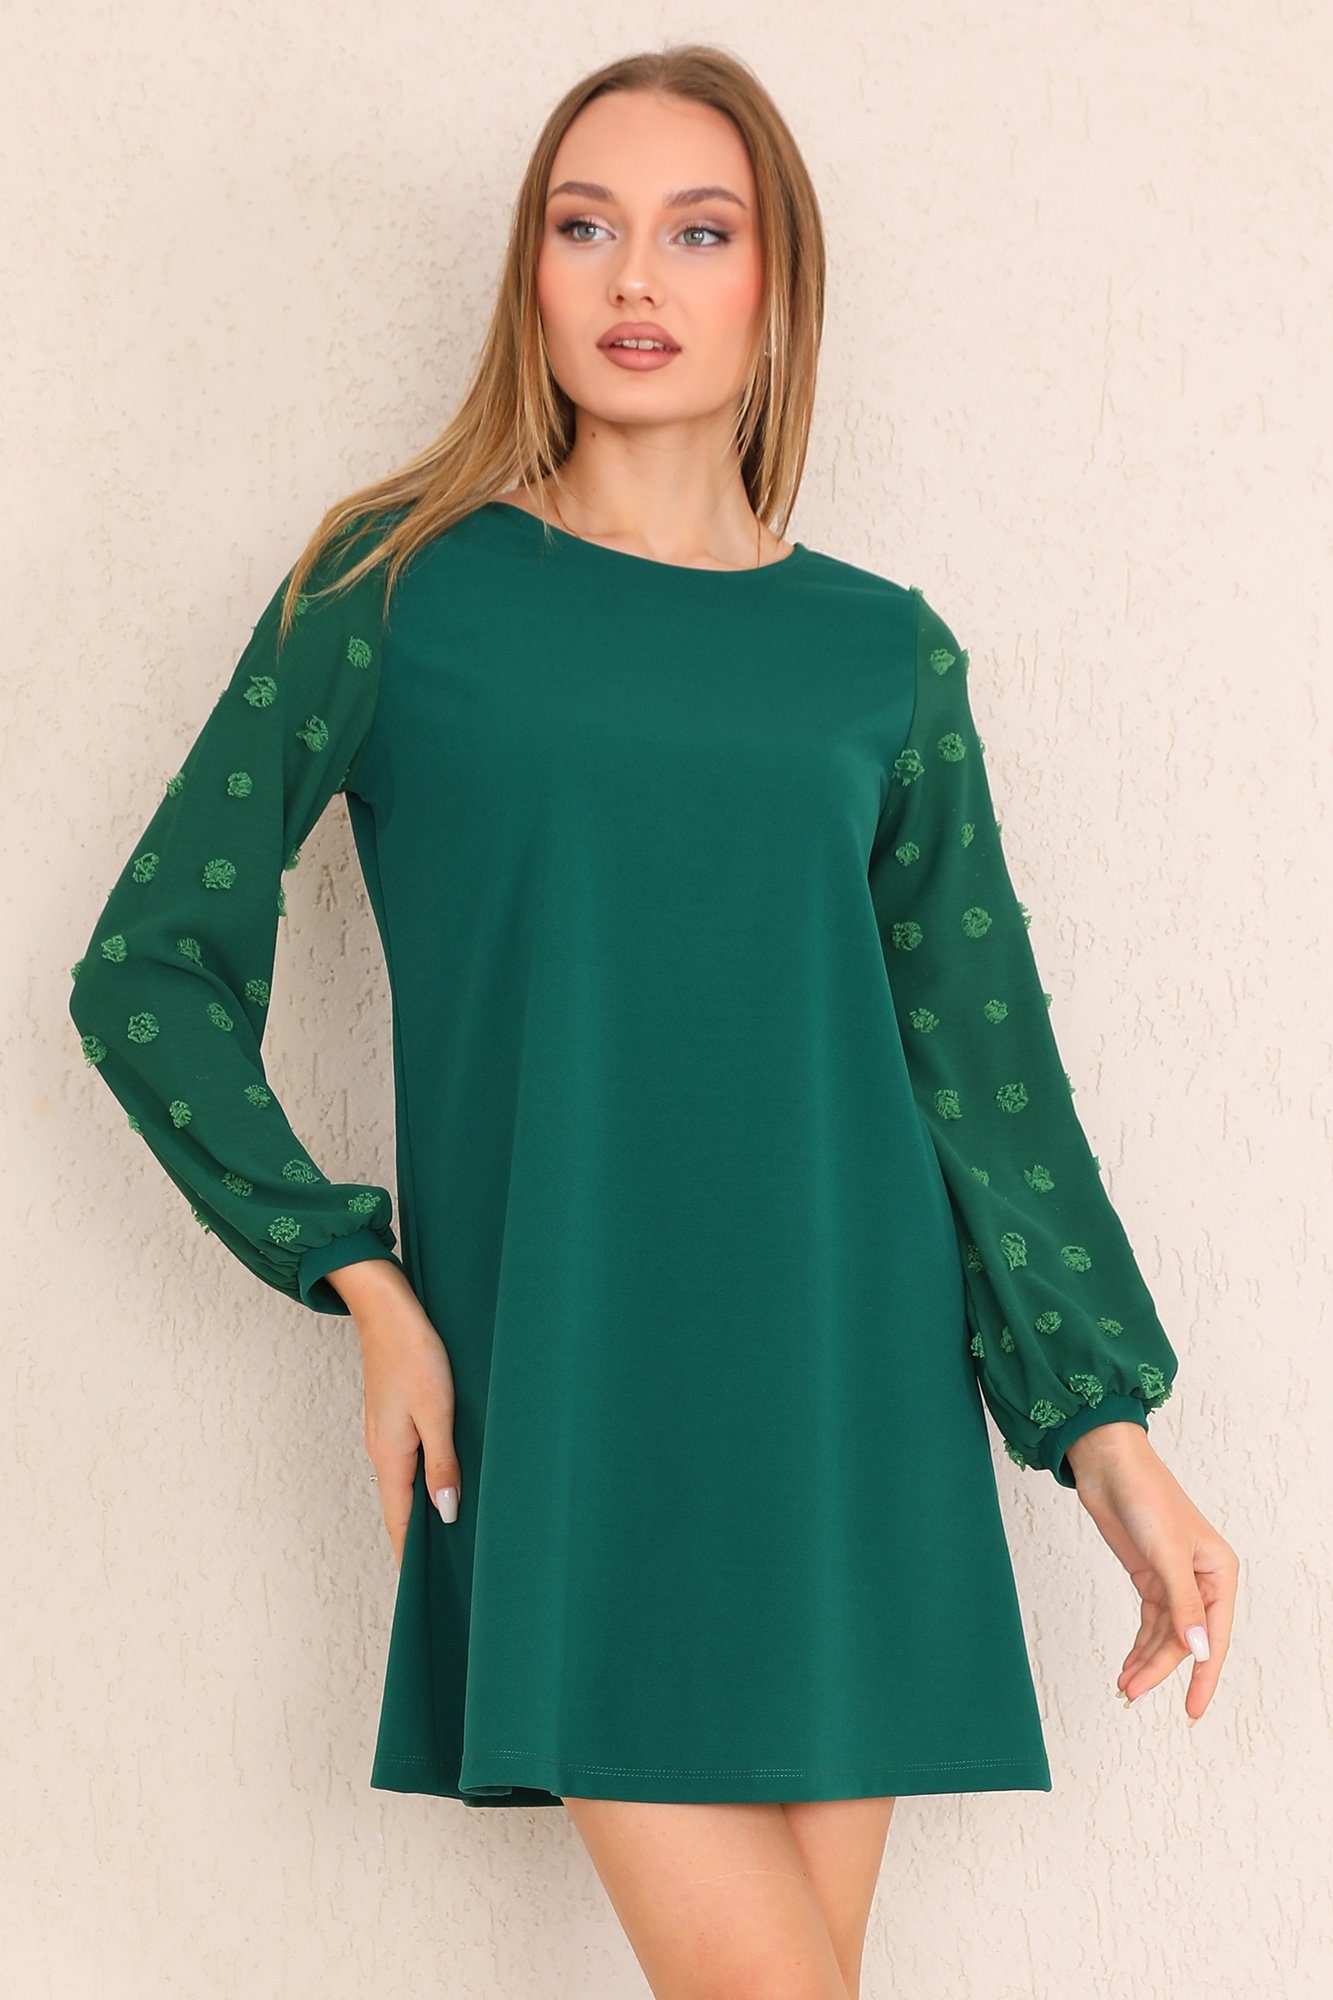 Bongual Partykleid A-Linie-Kleid Laterneärmel mit Struktur Punkte grün